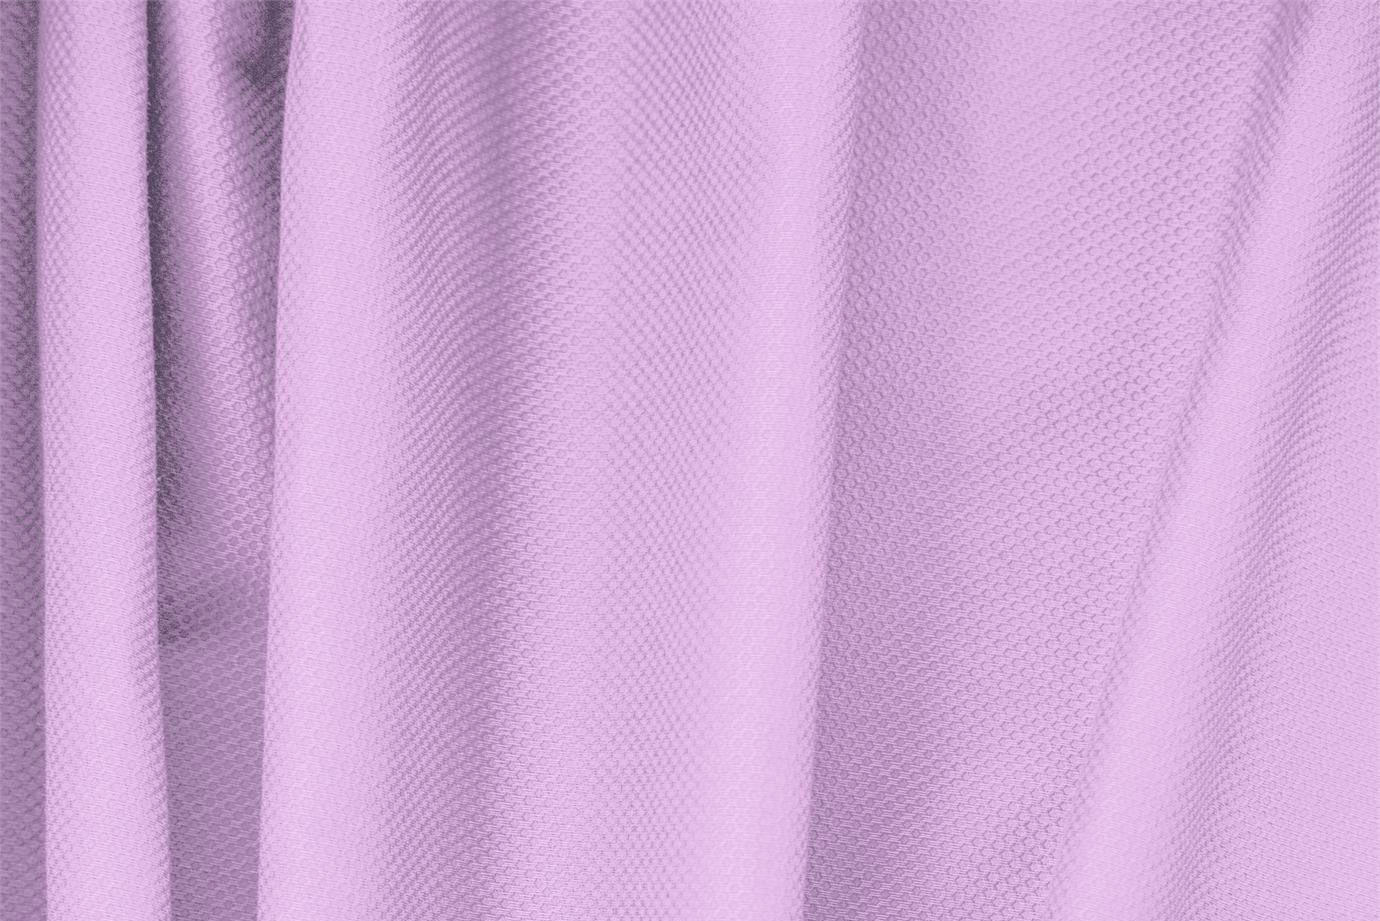 Tissu Piquet Stretch Violet lilas en Coton, Stretch pour vêtements